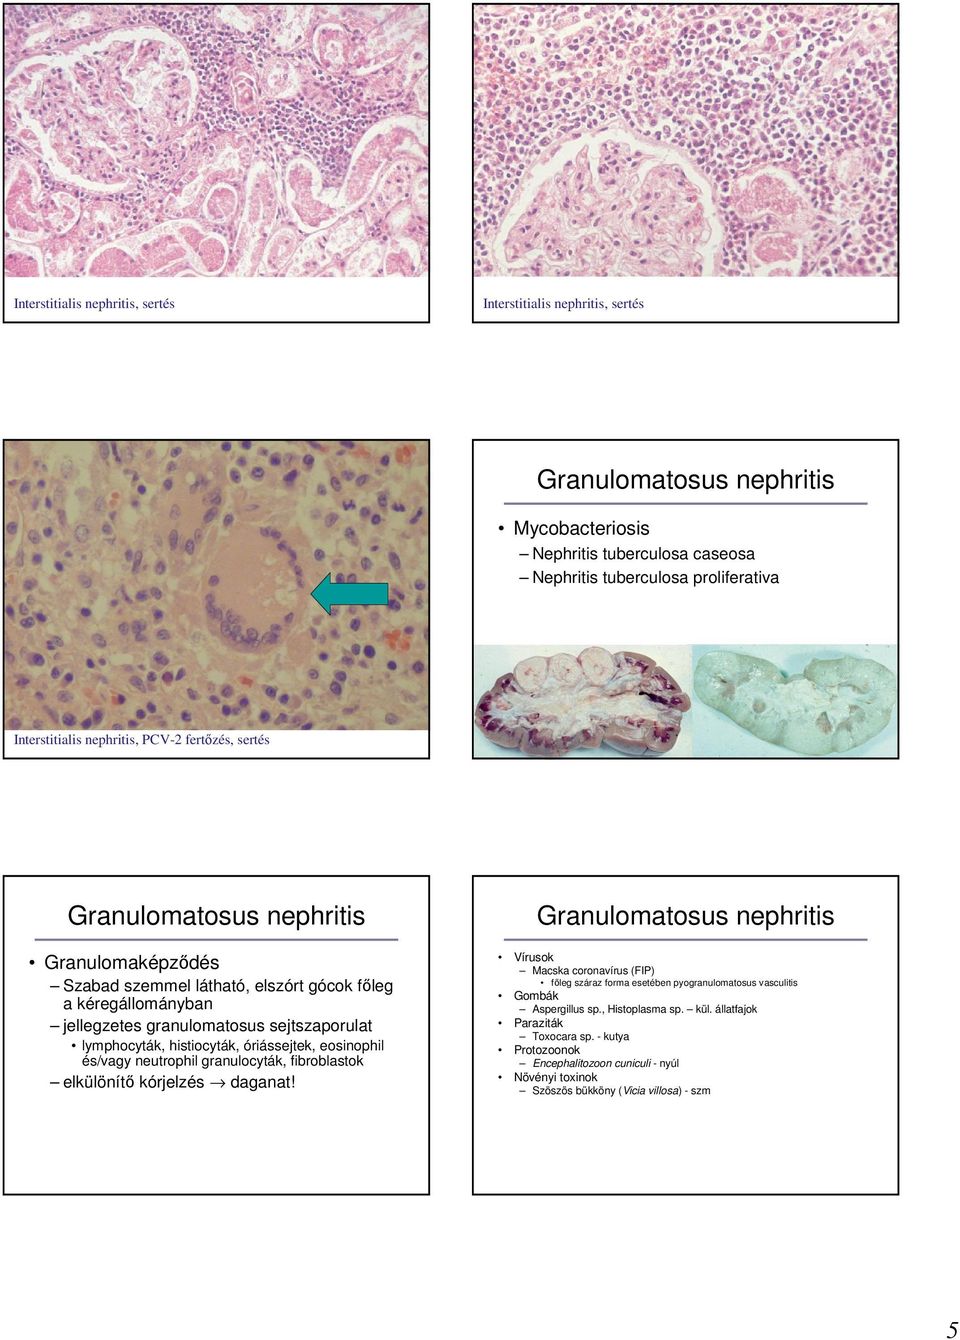 óriássejtek, eosinophil és/vagy neutrophil granulocyták, fibroblastok elkülönítı kórjelzés daganat!